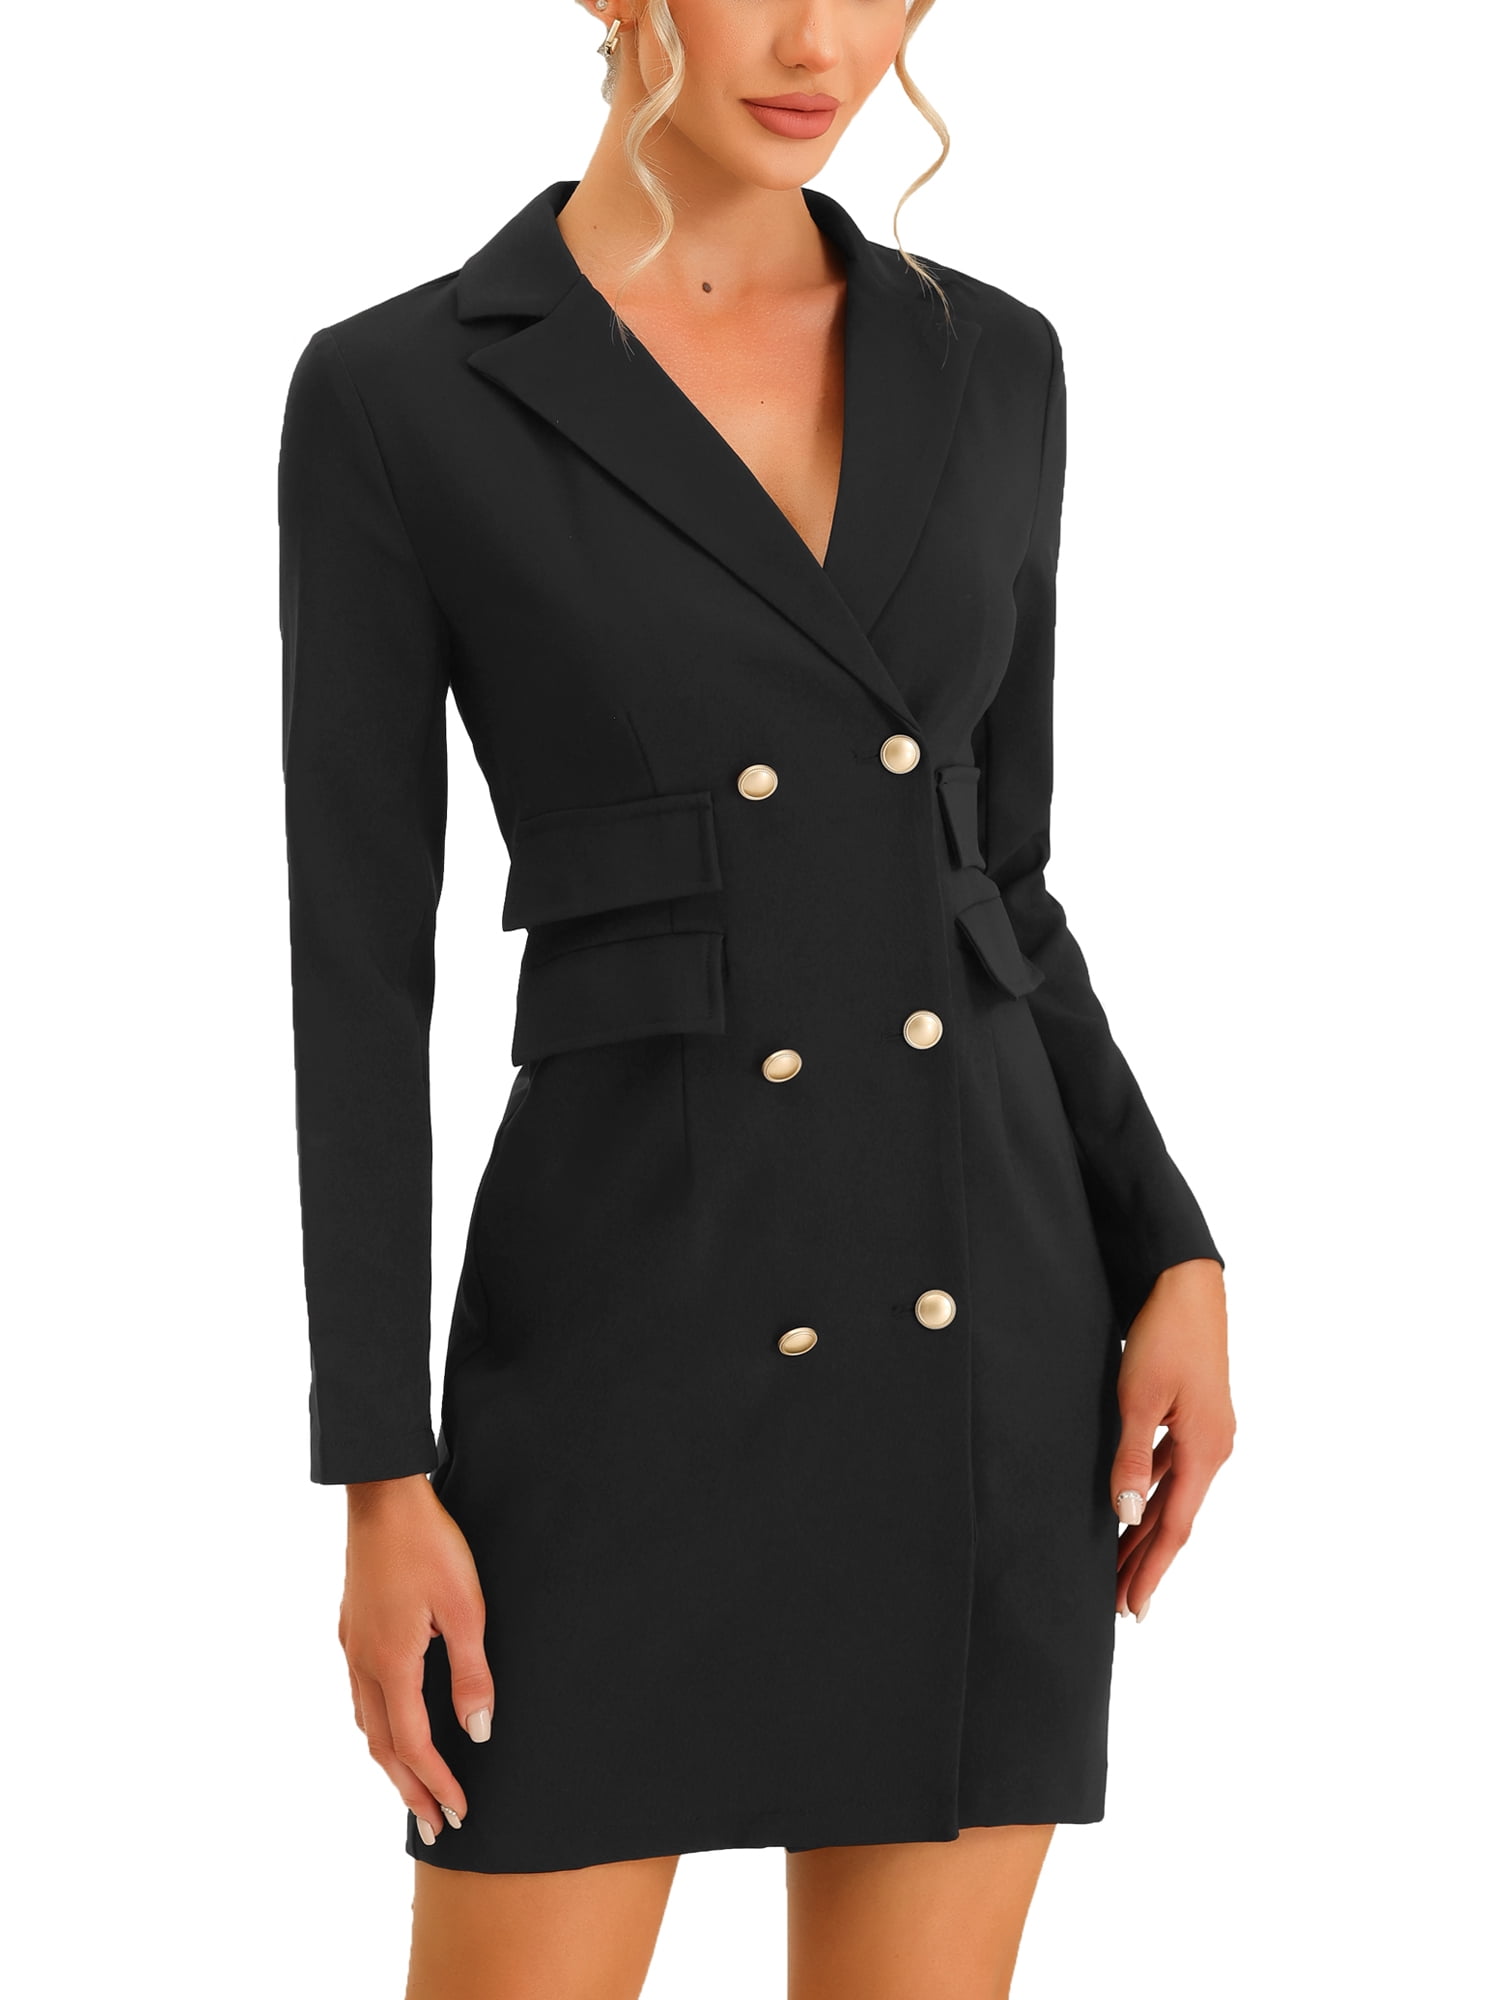 Allegra K Women's Office Elegant Blazer Work Dress with Pockets ...